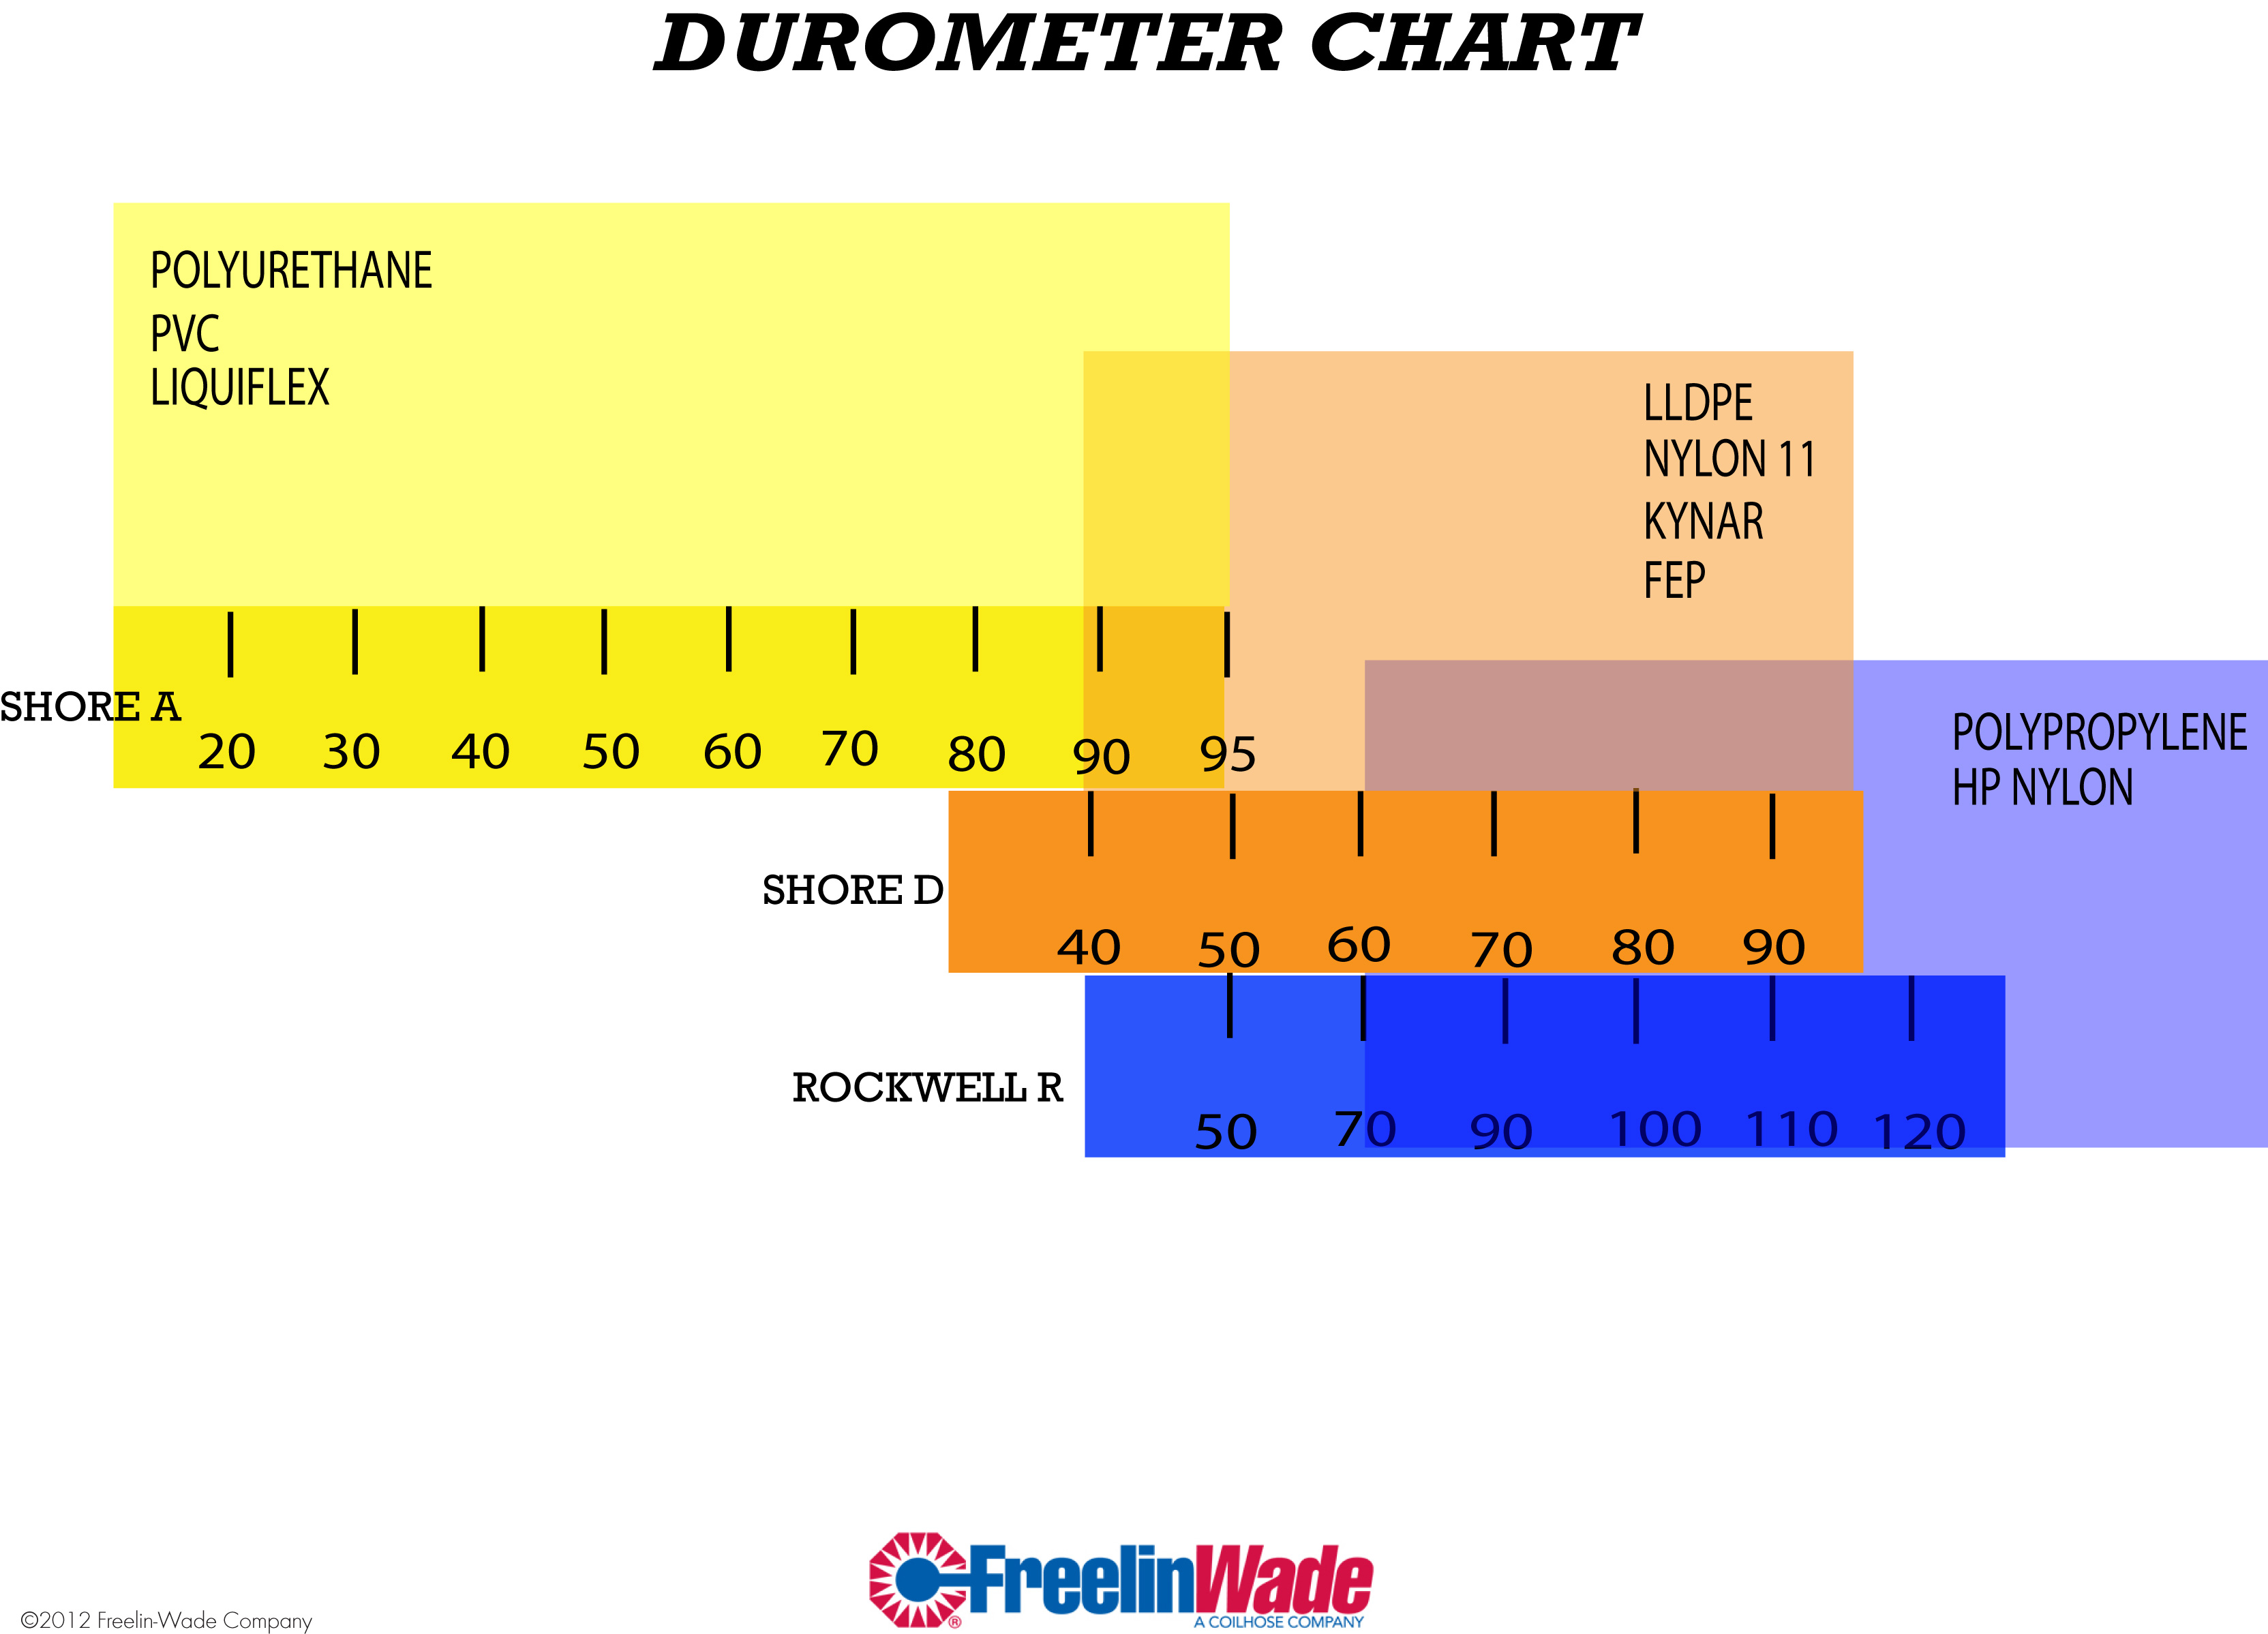 Durometer chart